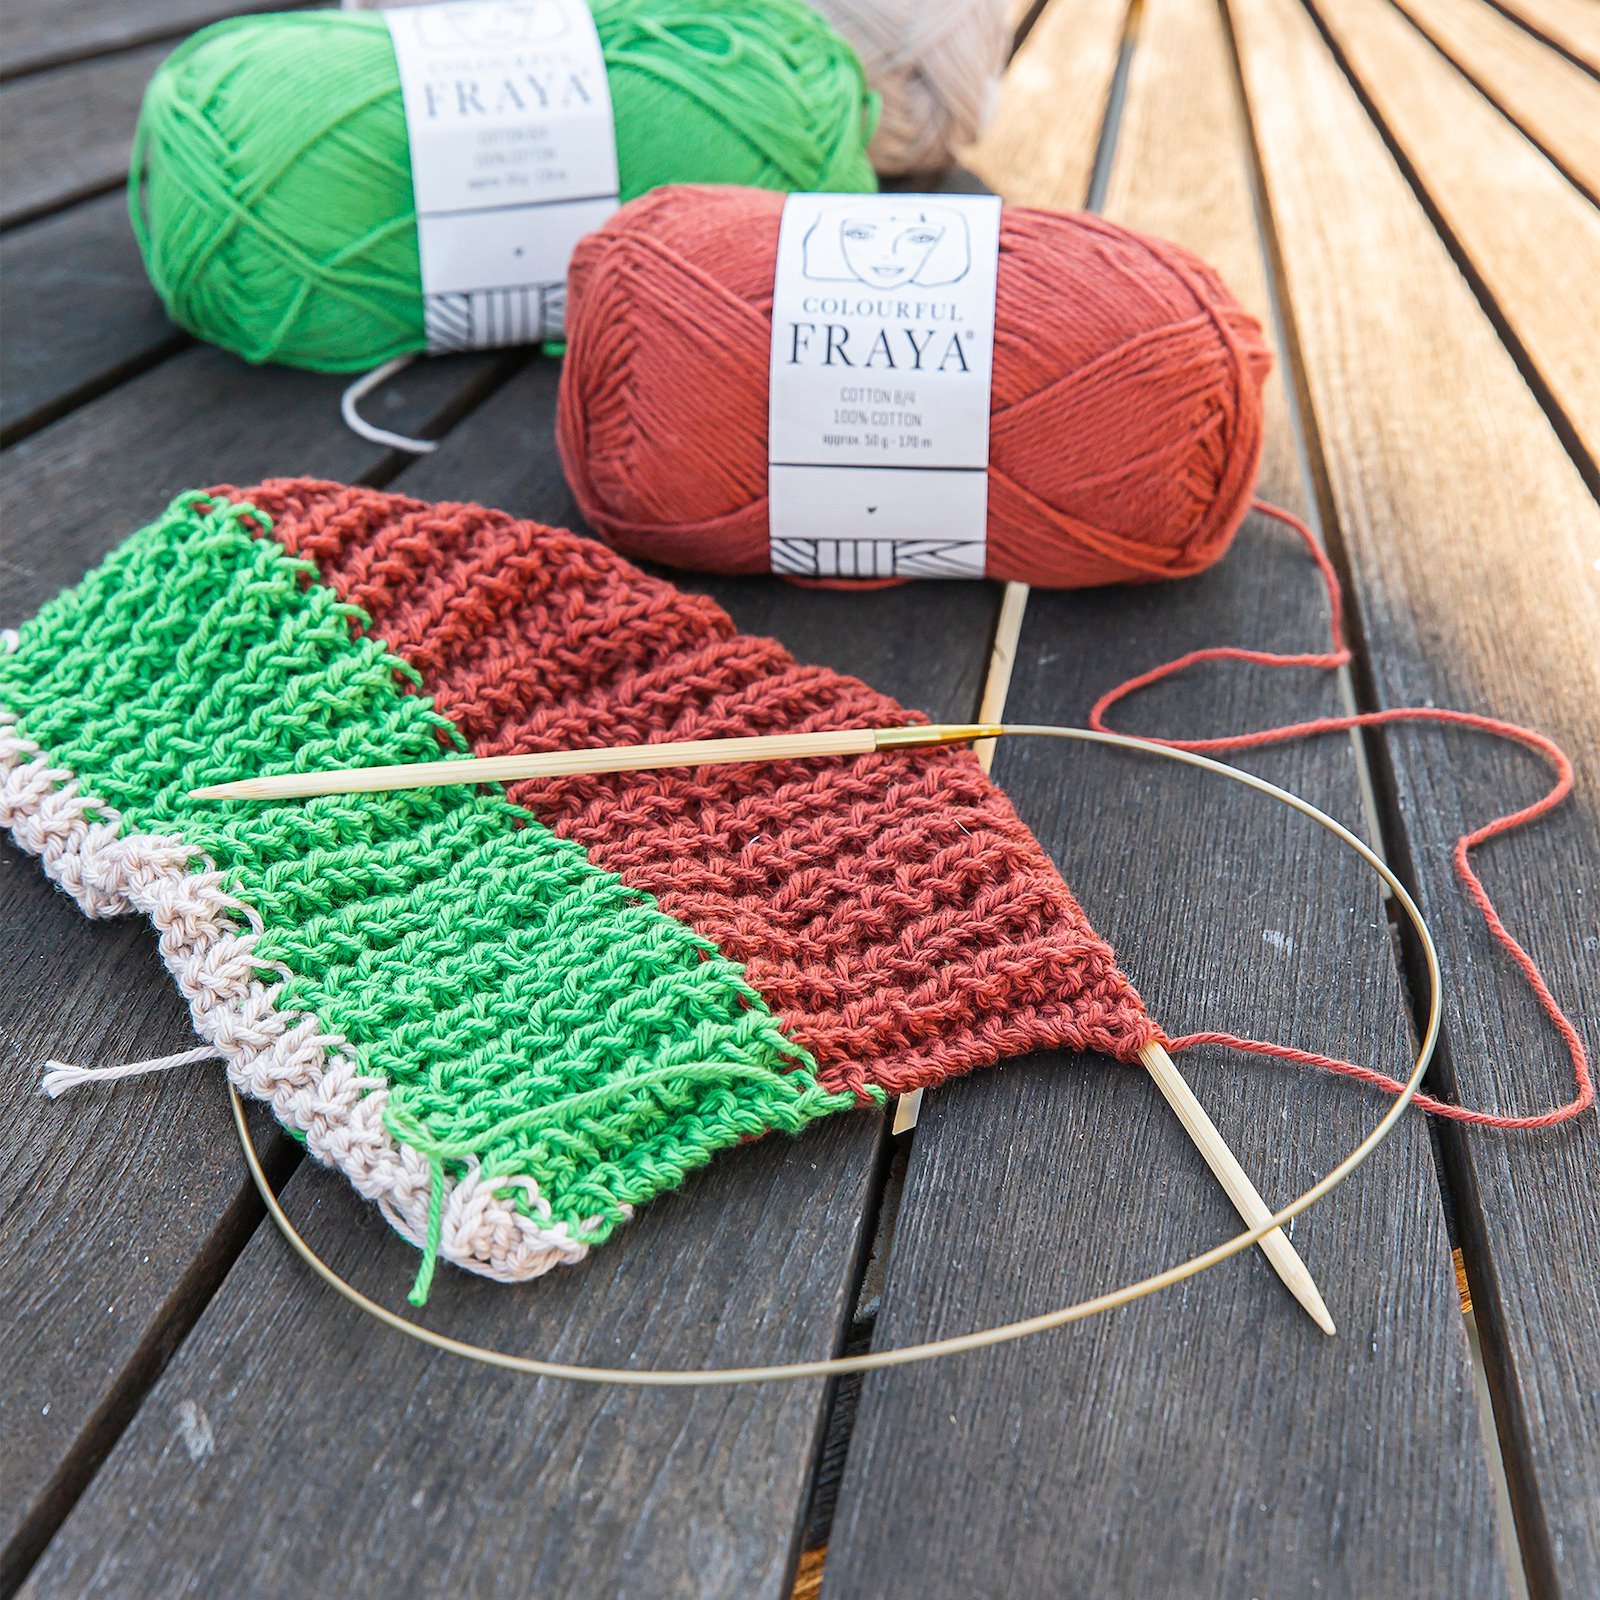 FRAYA, 100% cotton yarn "Colourful", grass green 90060076_90060072_90060061_sskit